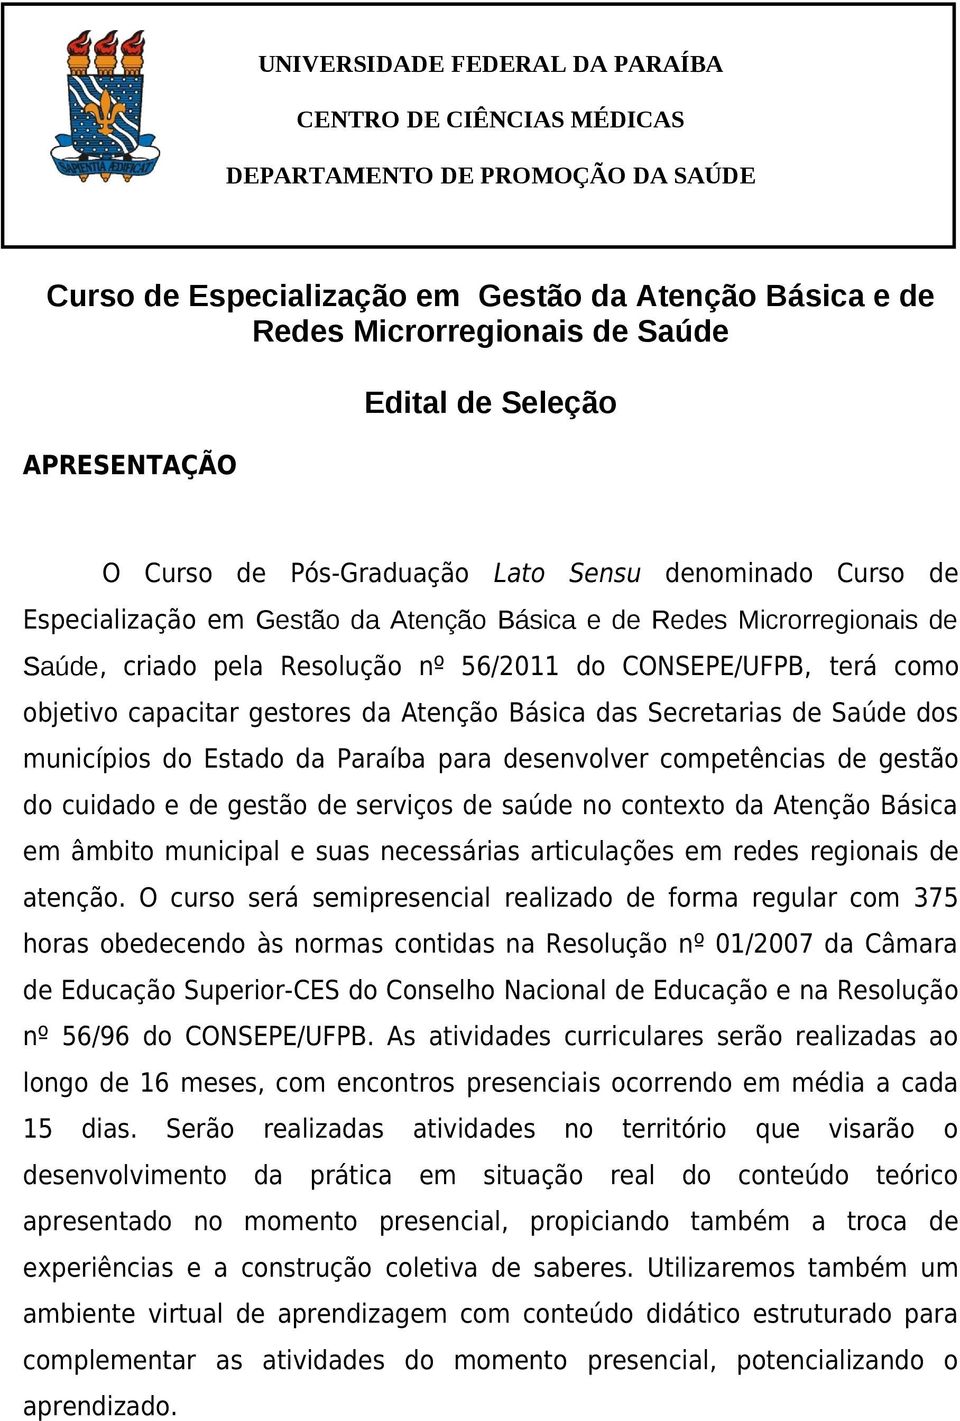 CONSEPE/UFPB, terá como objetivo capacitar gestores da Atenção Básica das Secretarias de Saúde dos municípios do Estado da Paraíba para desenvolver competências de gestão do cuidado e de gestão de